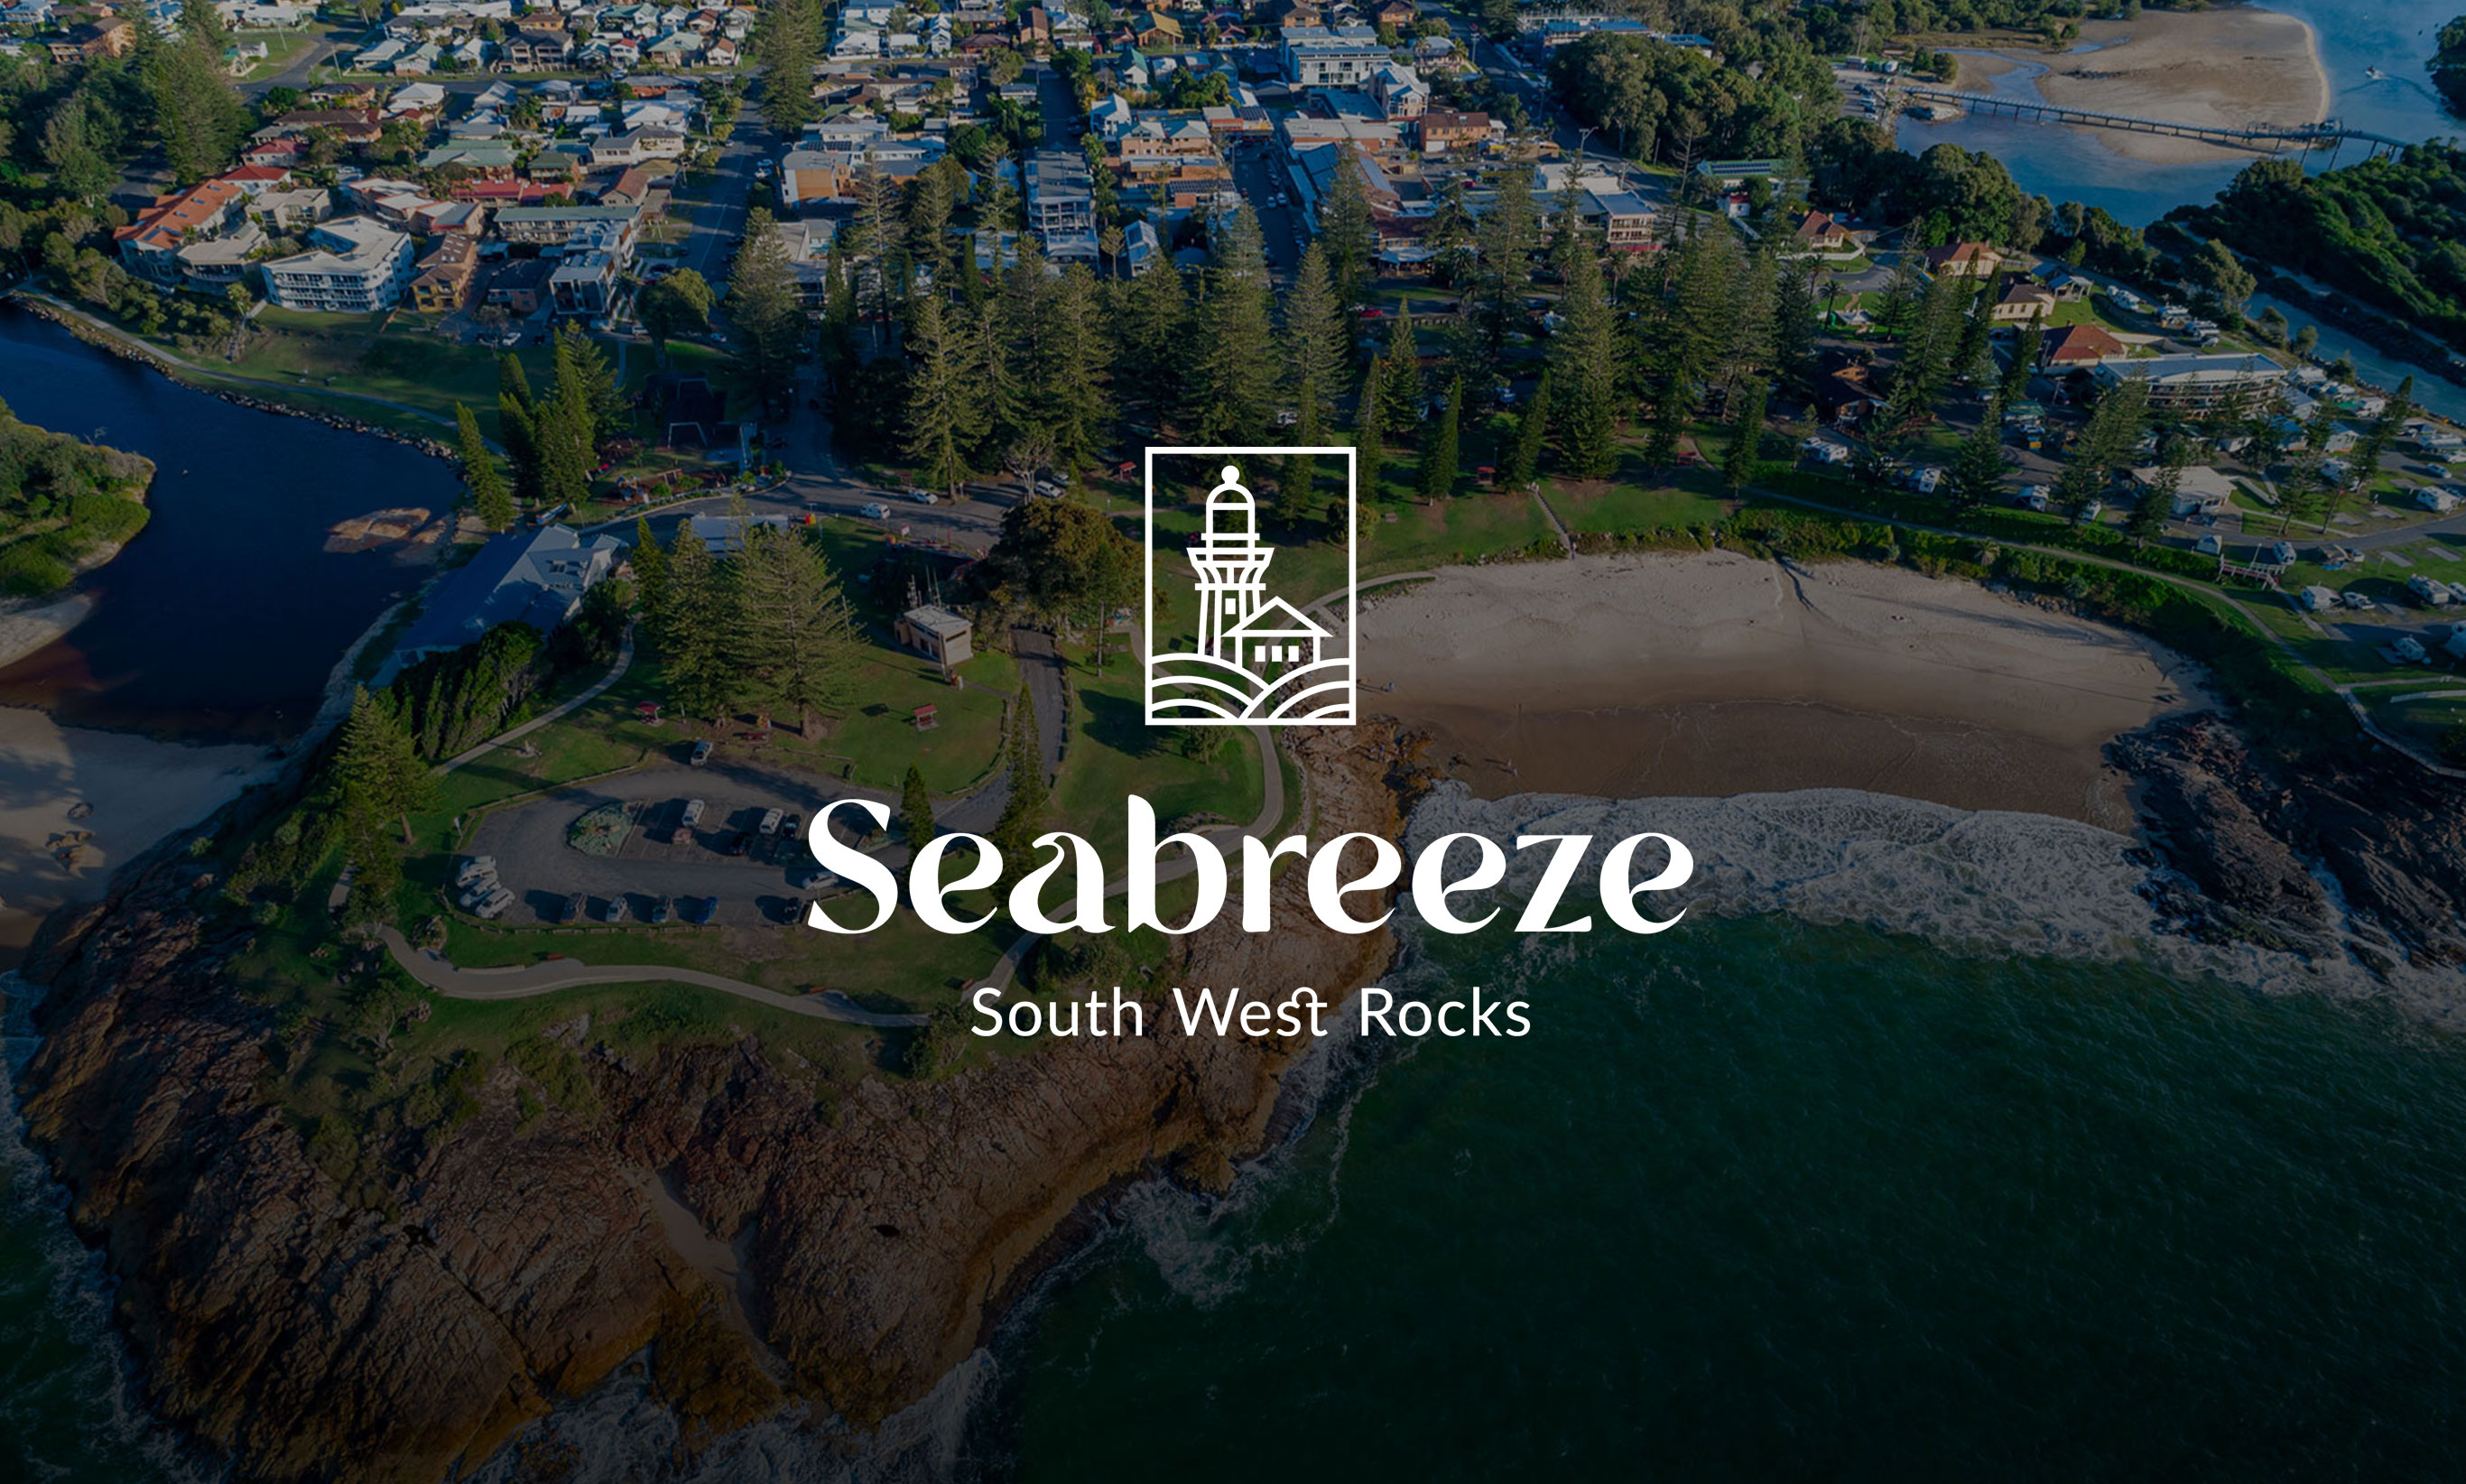 south-west-rocks-seaside-estate-seabreeze